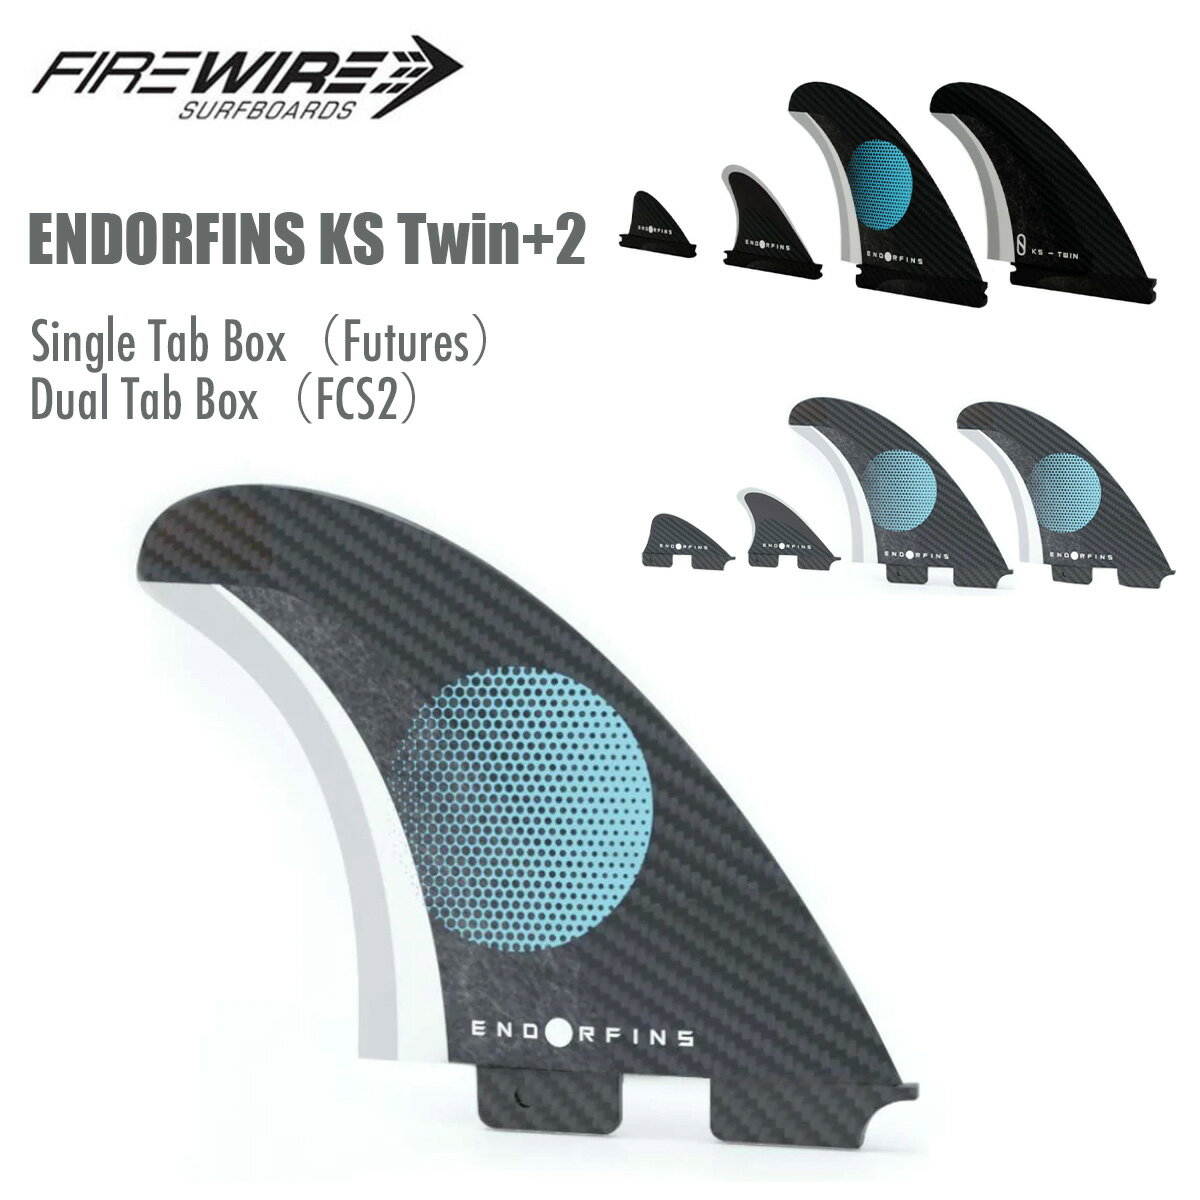 サーフィン フィン ファイヤーワイヤー スレーターデザイン FIREWIRE Slater Designs ENDORFINS KS Twin+2 ツインフィン スタビライザー ナブスター セット 4枚 水に浮く フューチャー用 FCS2…